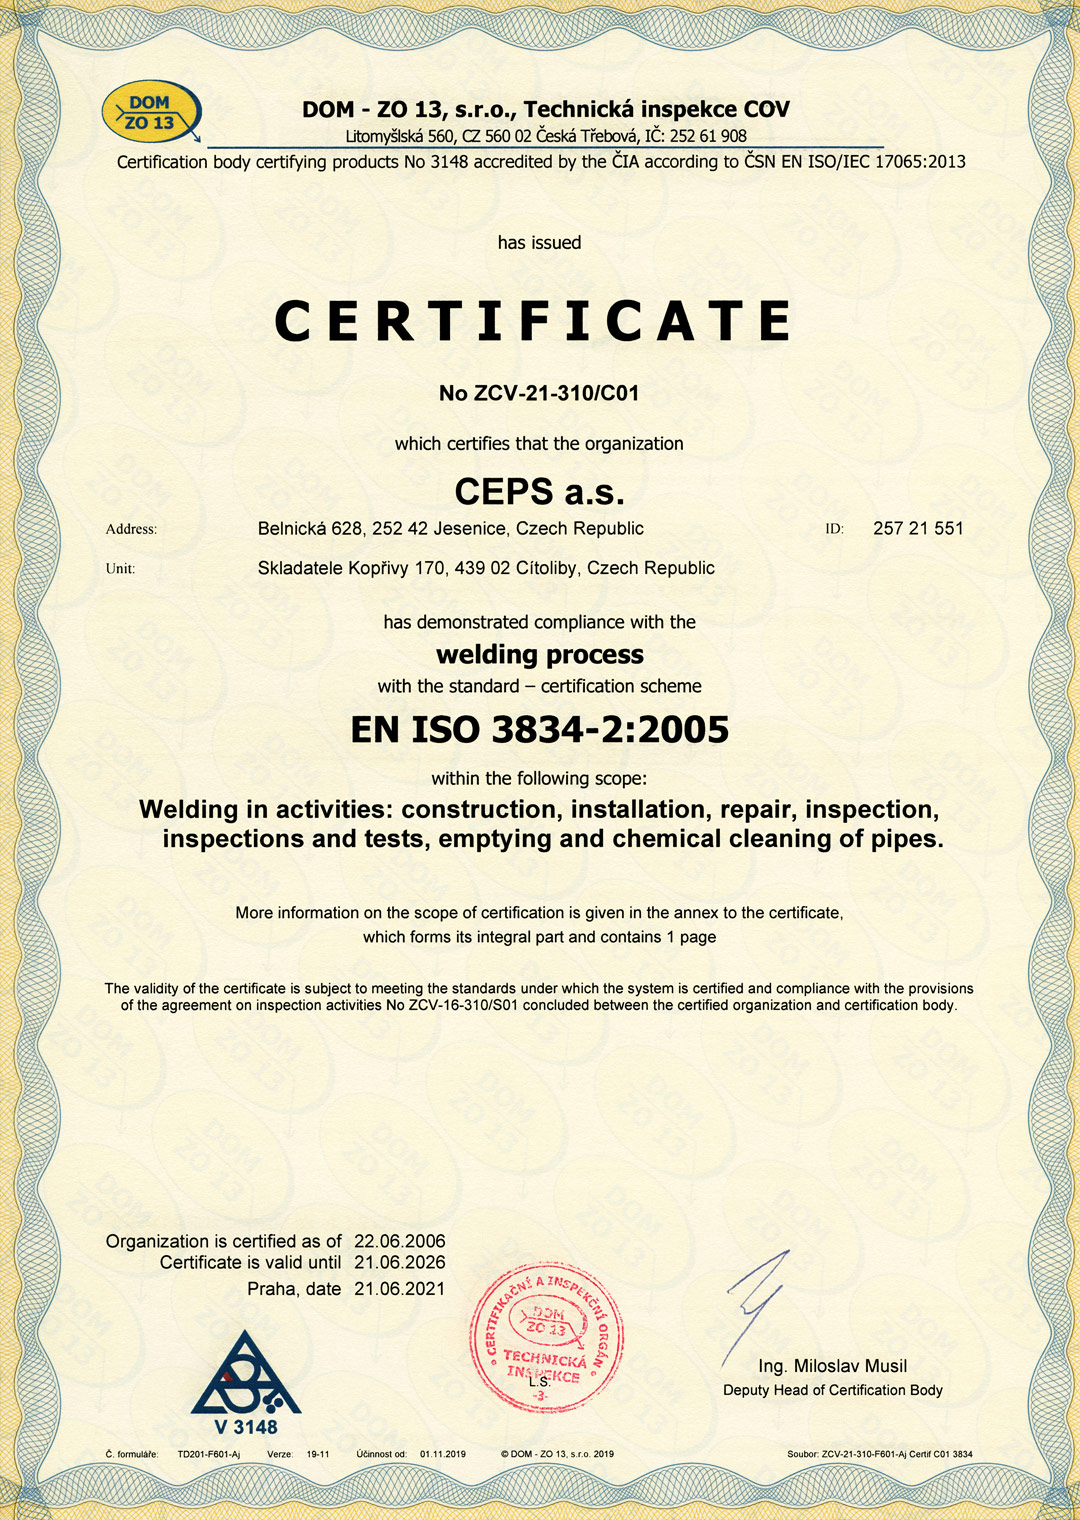 EN ISO 3834-2:2005 Welding Process Certificate (Certificate No. ZCV-21-310/C01)